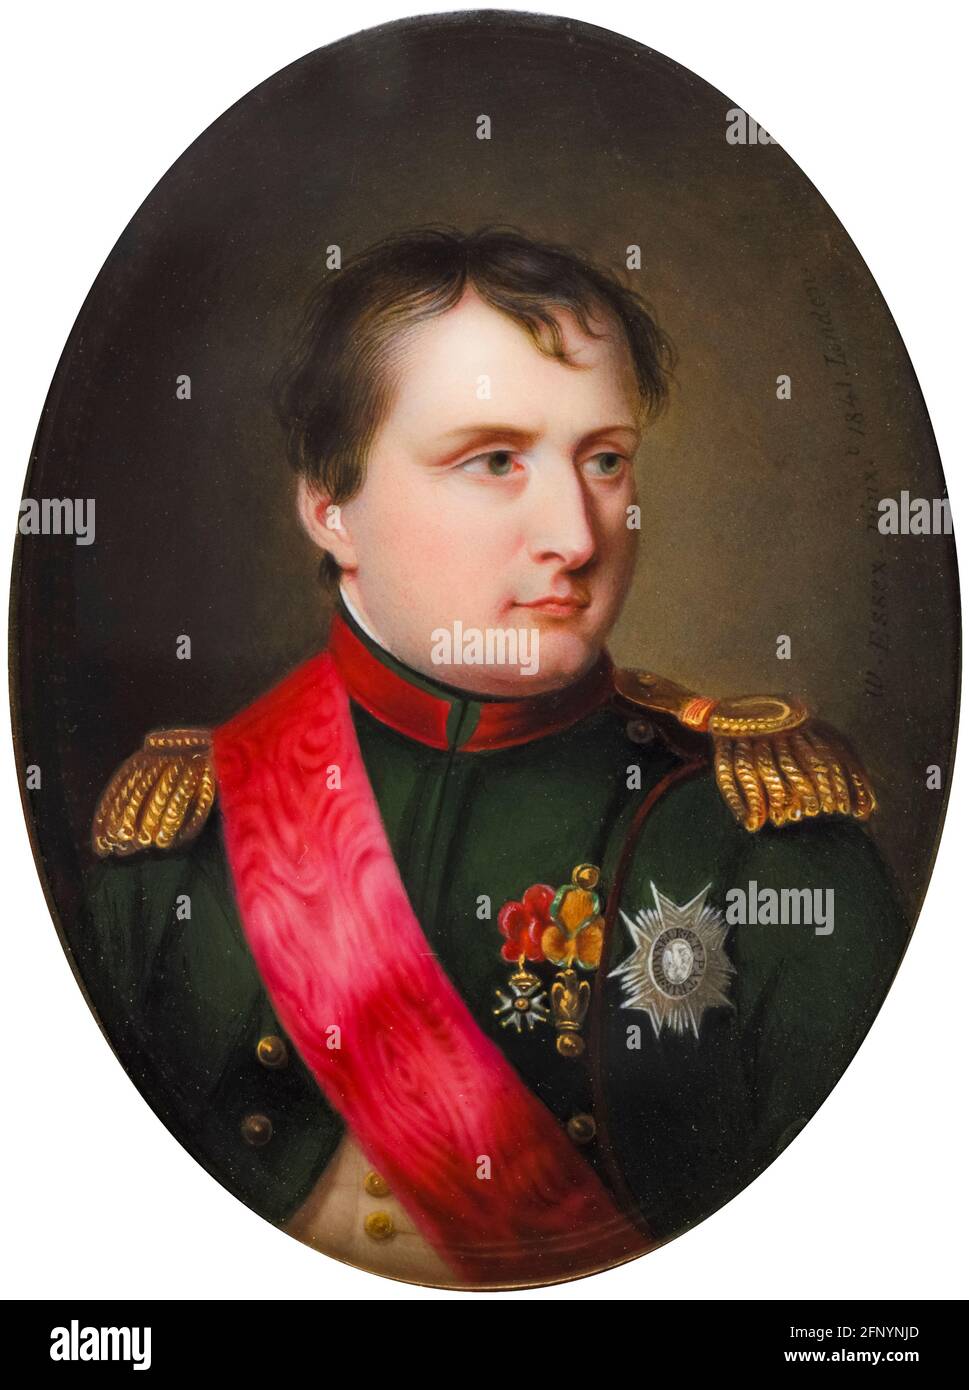 Napoléon Bonaparte (1769-1821), empereur de France comme Napoléon Bonaparte I, portrait miniature de William Essex, 1841 Banque D'Images